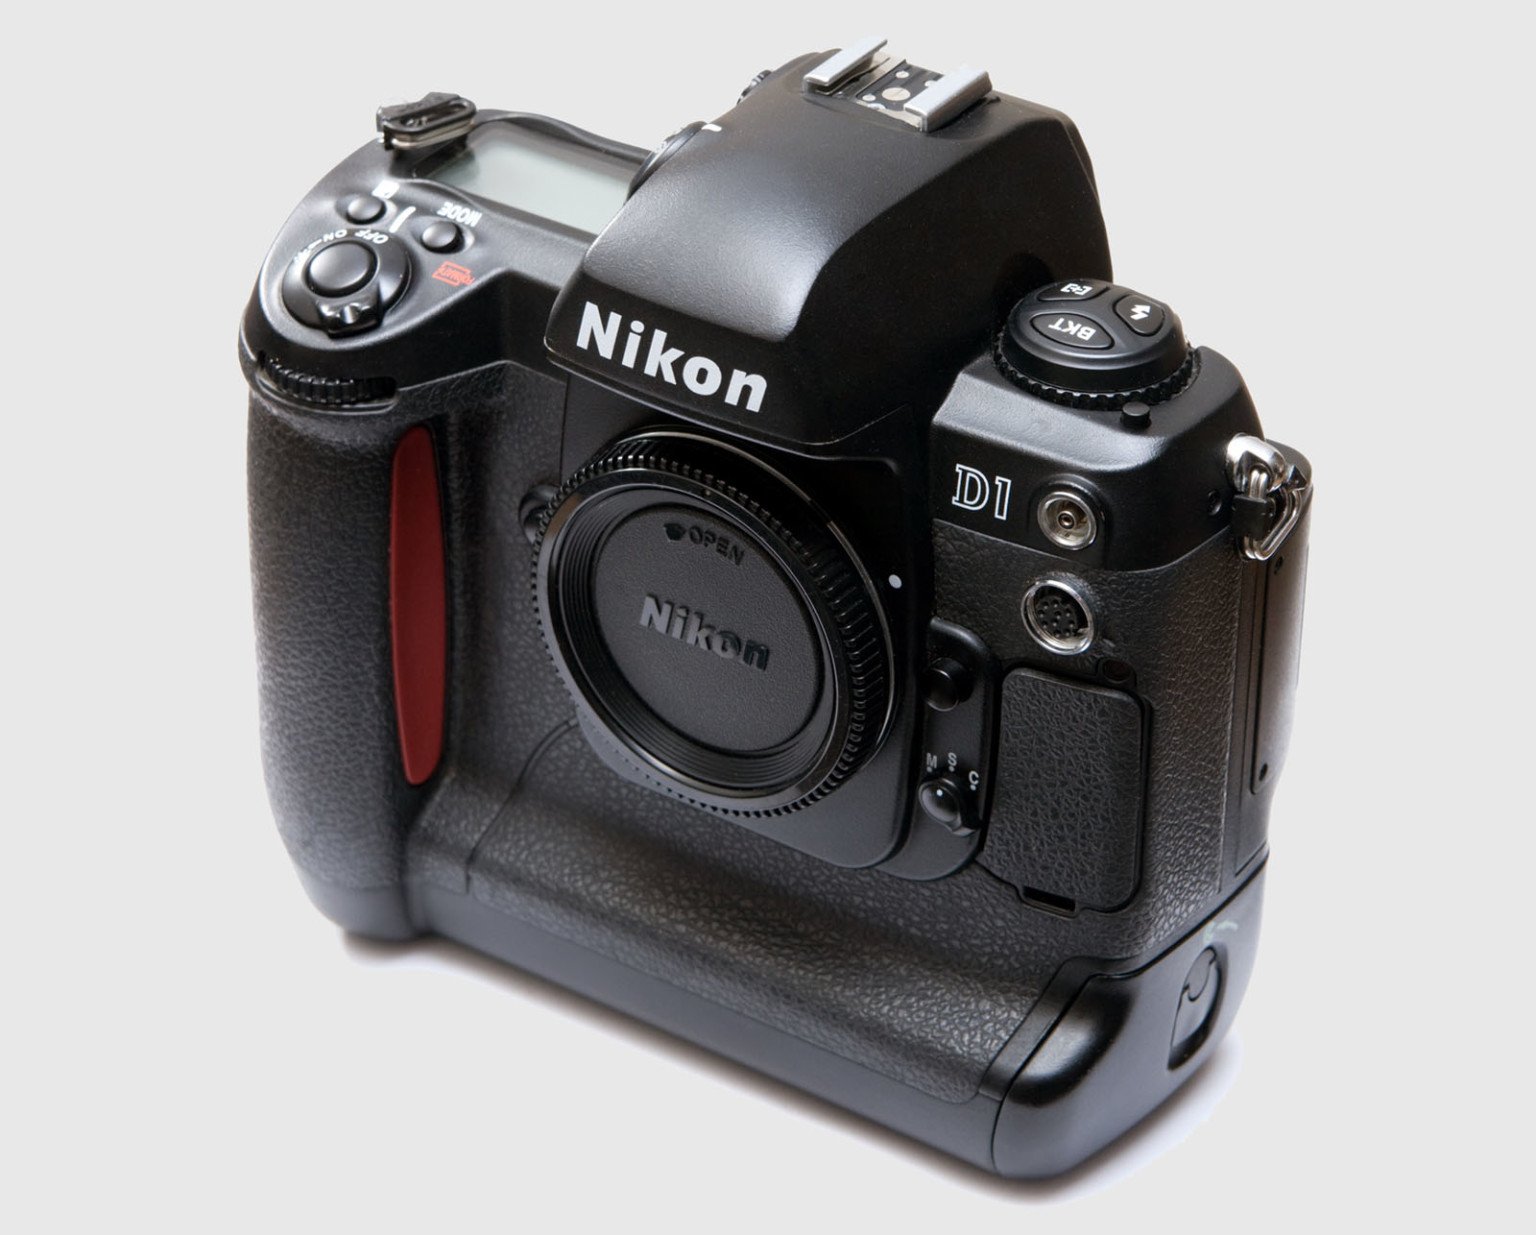 Máy ảnh Nikon D1 DSLR nguyên gốc được phát hành vào tháng 6/1999